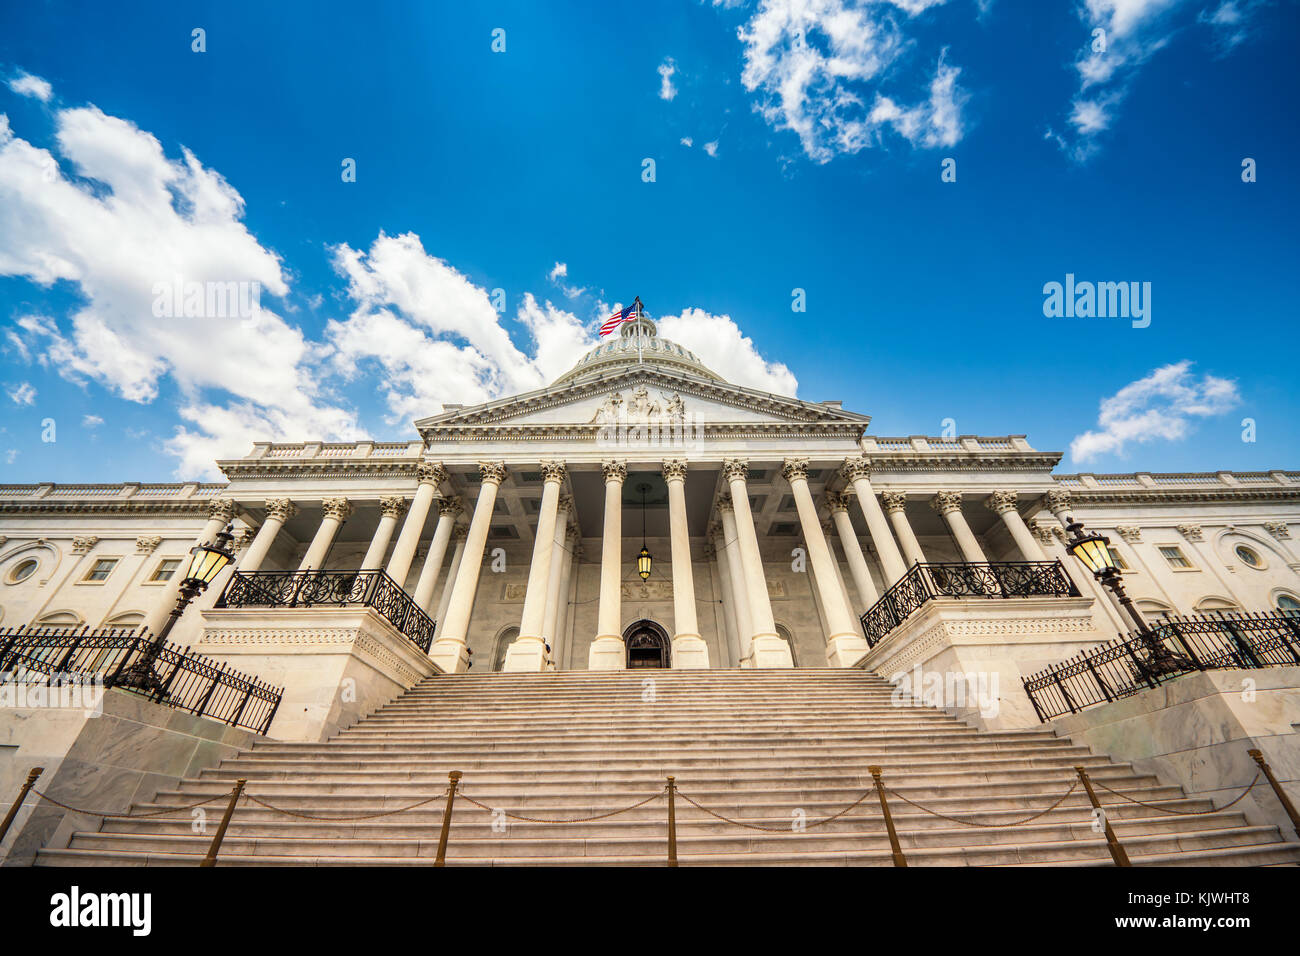 Las escaleras que conducen hasta el edificio del Capitolio de los Estados Unidos en Washington DC - la fachada oriental de la famosa us landmark. Foto de stock